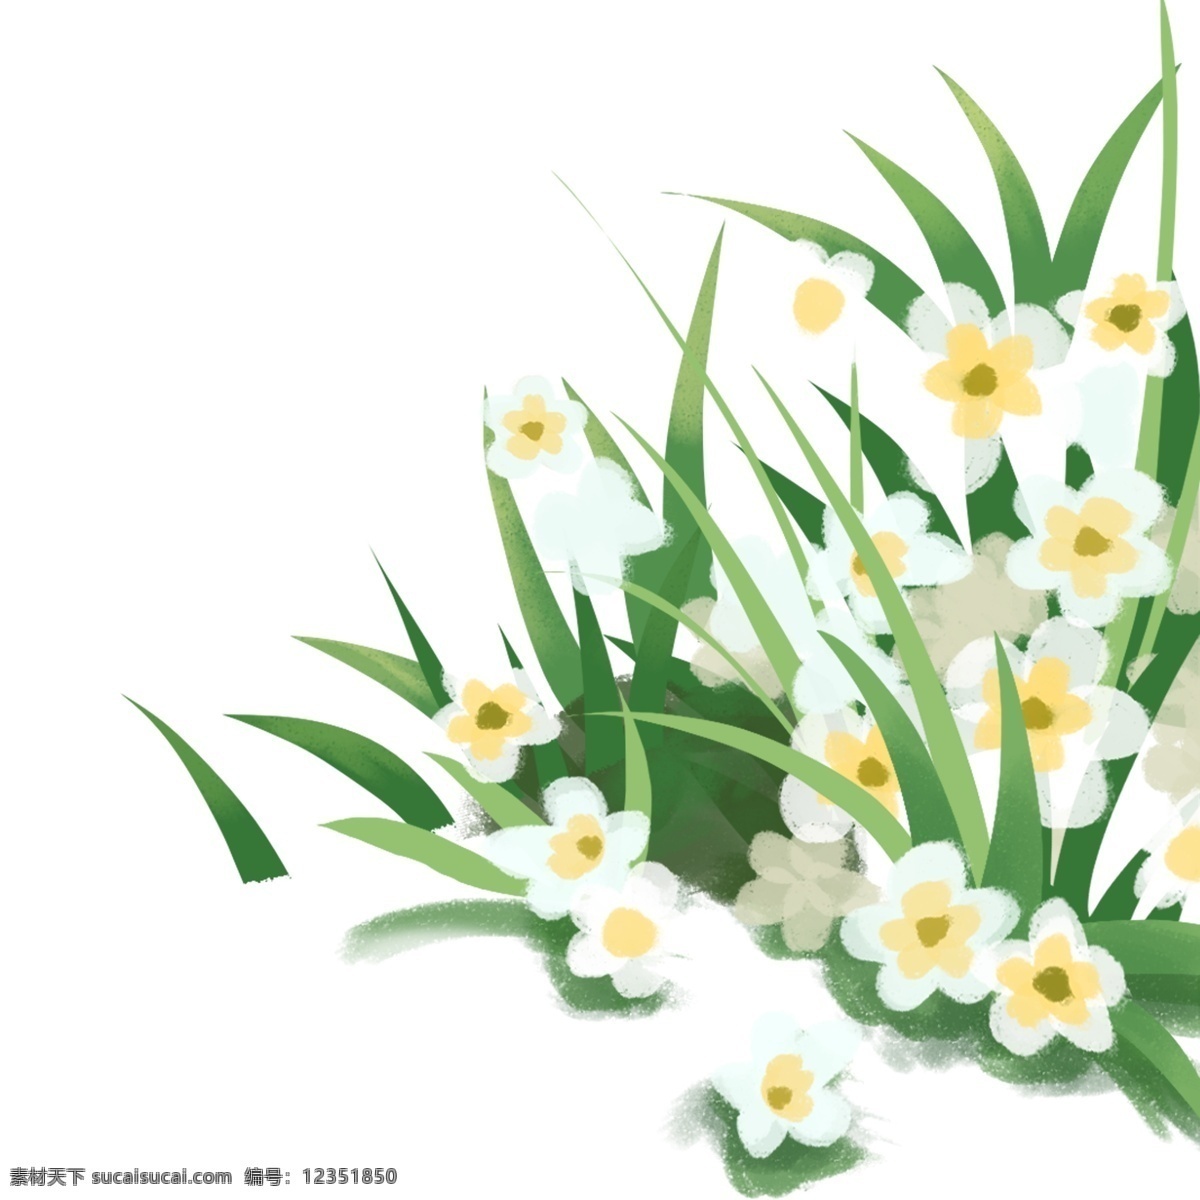 白色 花朵 花草 装饰 植物 绘画 插画元素 设计元素 卡通 彩色 简约 小清新 精致